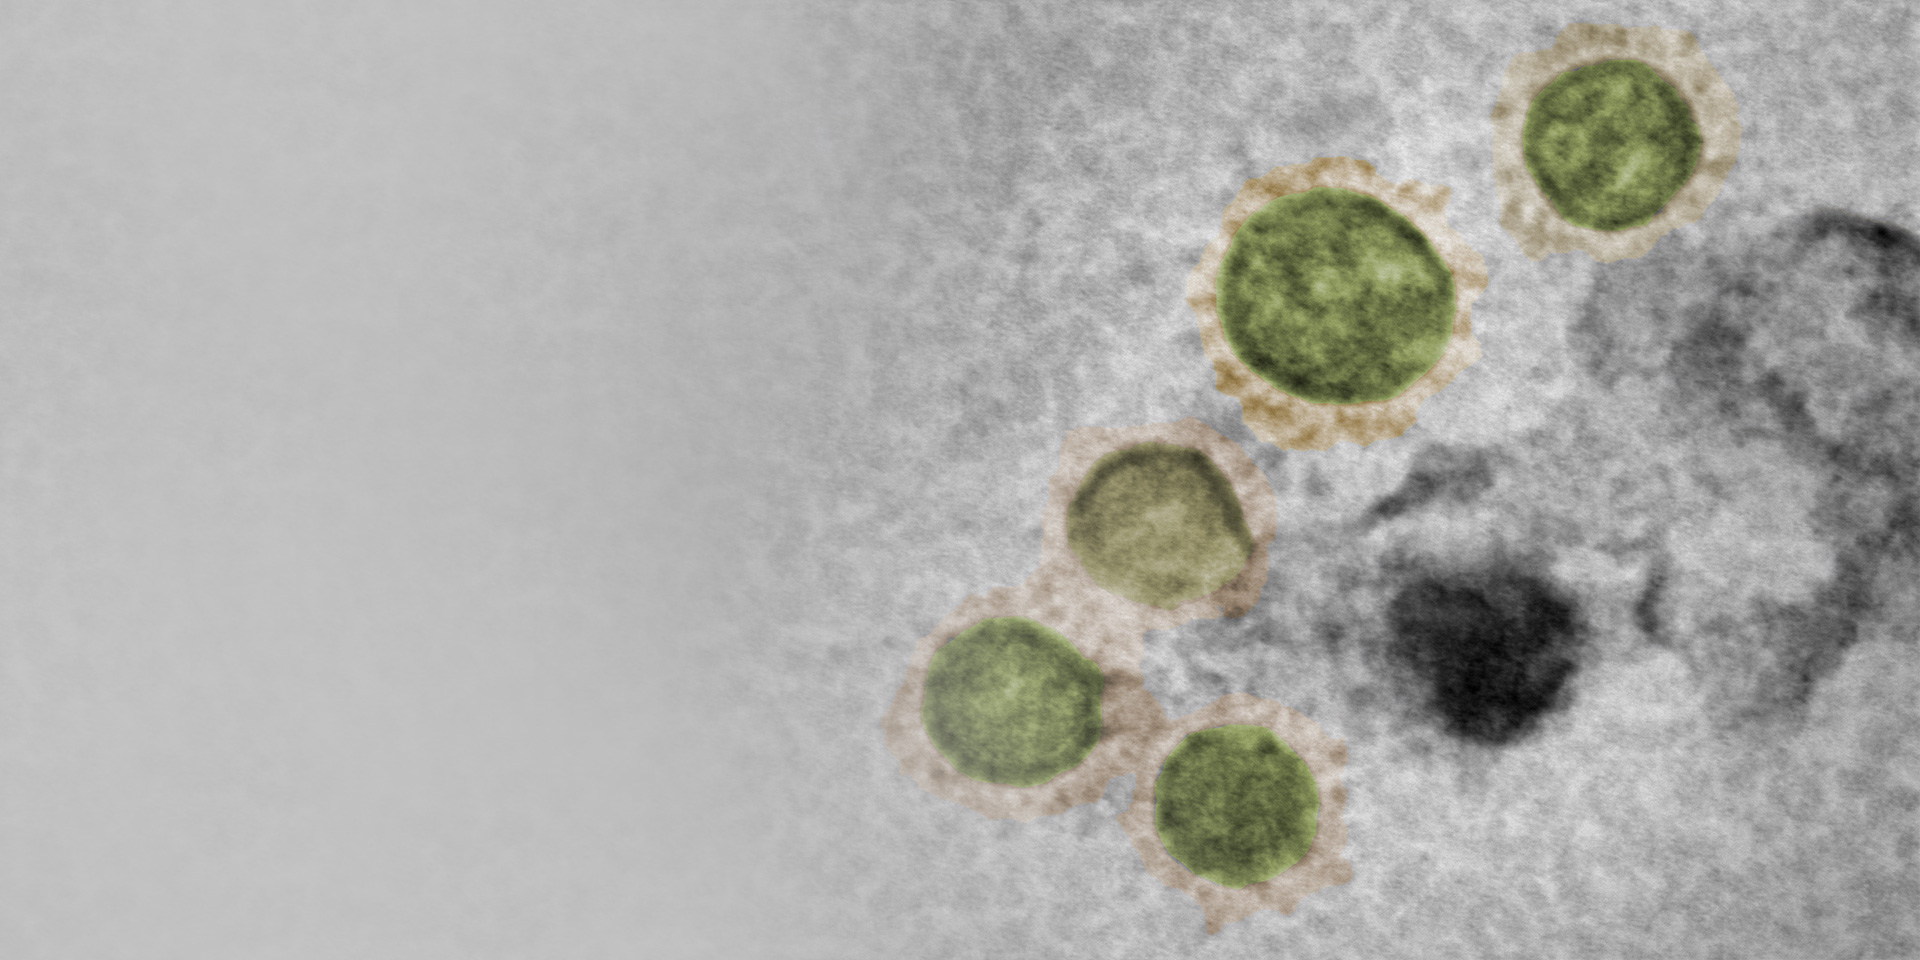 Virus du SARS-CoV-2, culture, inactivé, coloré en négatif, GeminiSEM 560, aSTEM, HAADF/BF. Échantillon avec l'aimable autorisation de M. Hannah, agence publique Public Health England, Royaume-Uni.